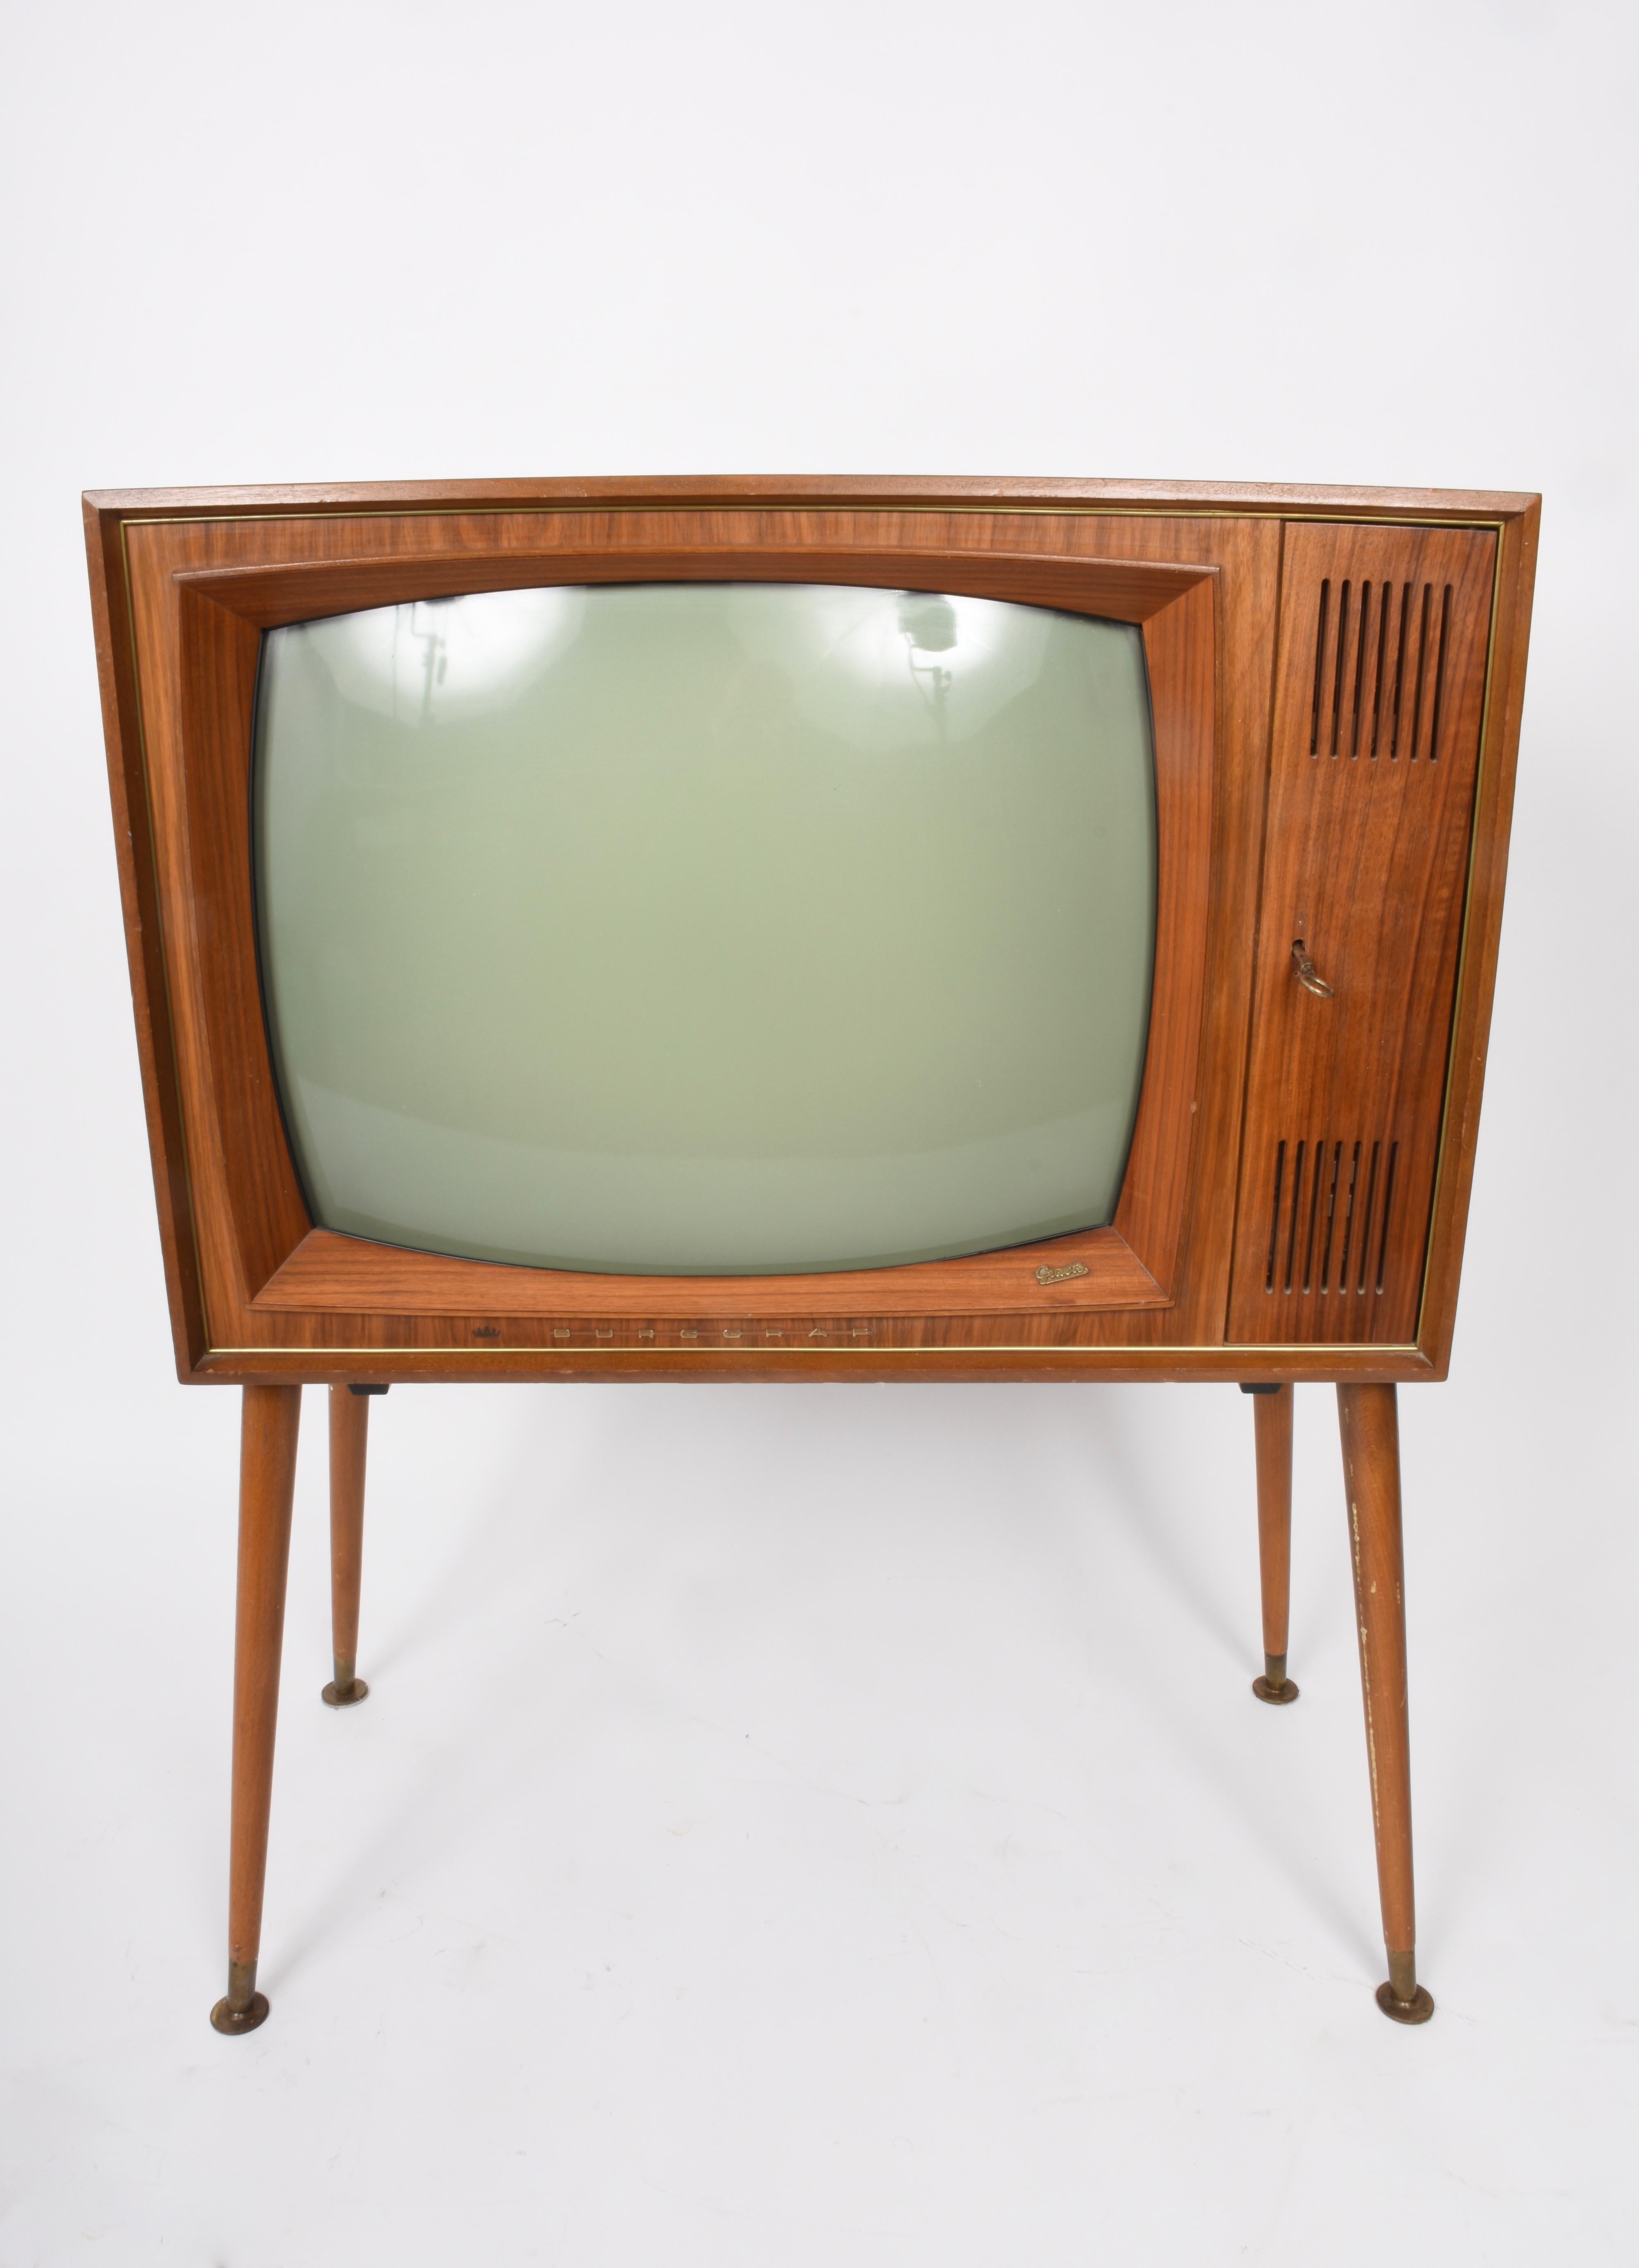 Vintage Tv Graetz Burggraf, 1960s Wooden Floor Television, Midcentury 5